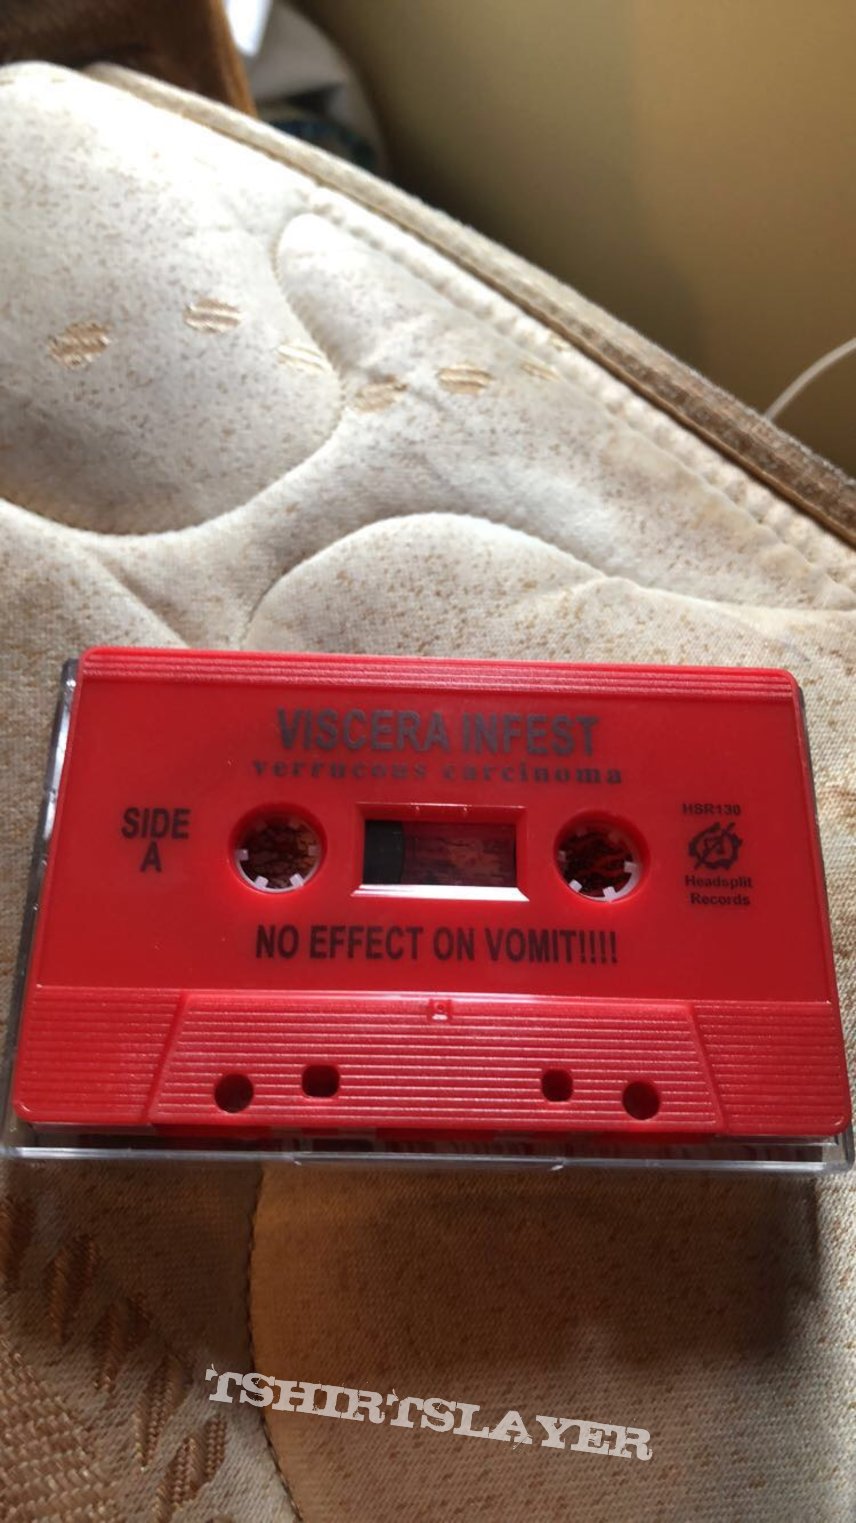 Viscera Infest - Verrucous Carcinoma tape